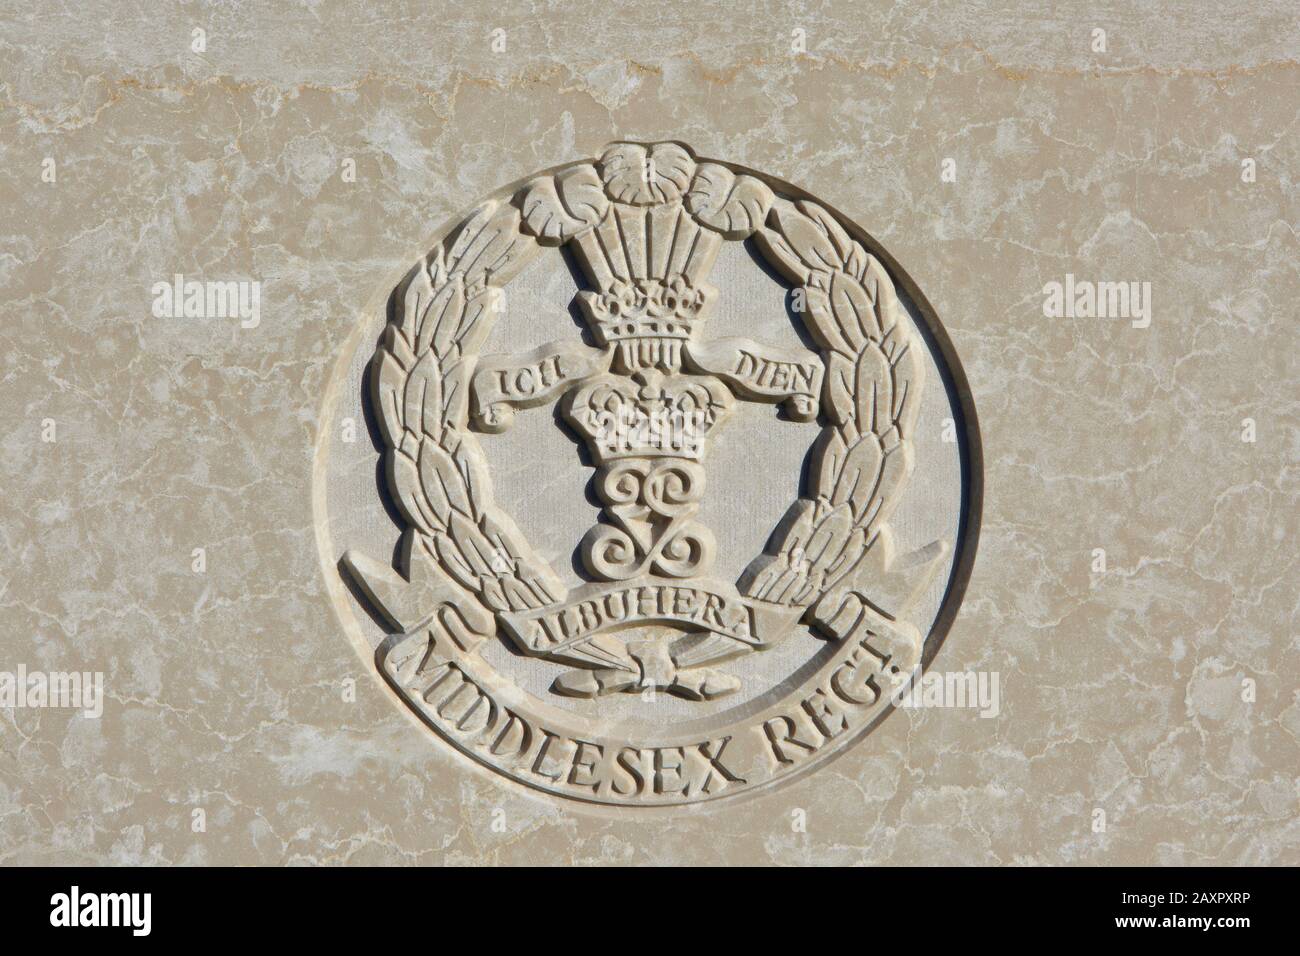 Le Middlesex Regiment (Le duc De Cambridge) (1881-1966) emblème sur une pierre angulaire de la première Guerre mondiale au cimetière Tyne Cot de Zonnebeke, Belgique Banque D'Images